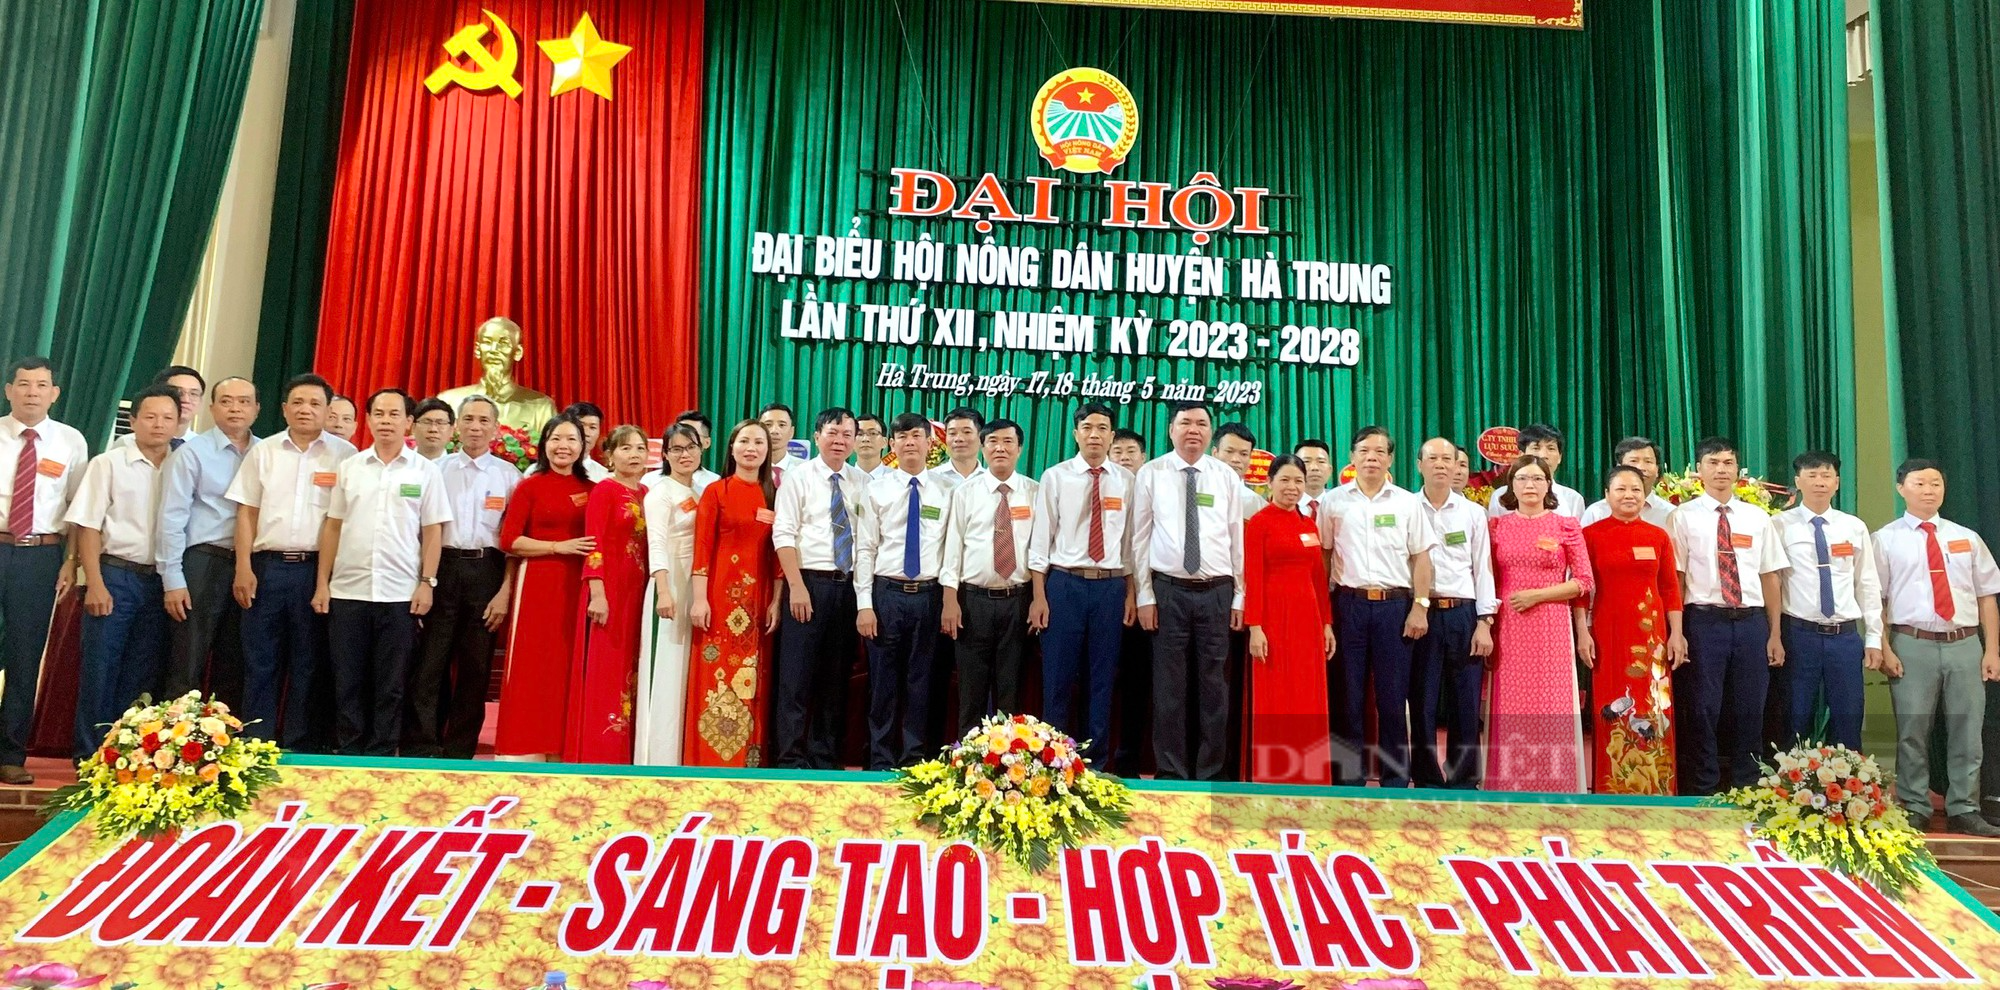 Đại hội đại biểu Hội Nông dân huyện Hà Trung, ông Mai Đức Sơn tái đắc cử Chủ tịch - Ảnh 3.